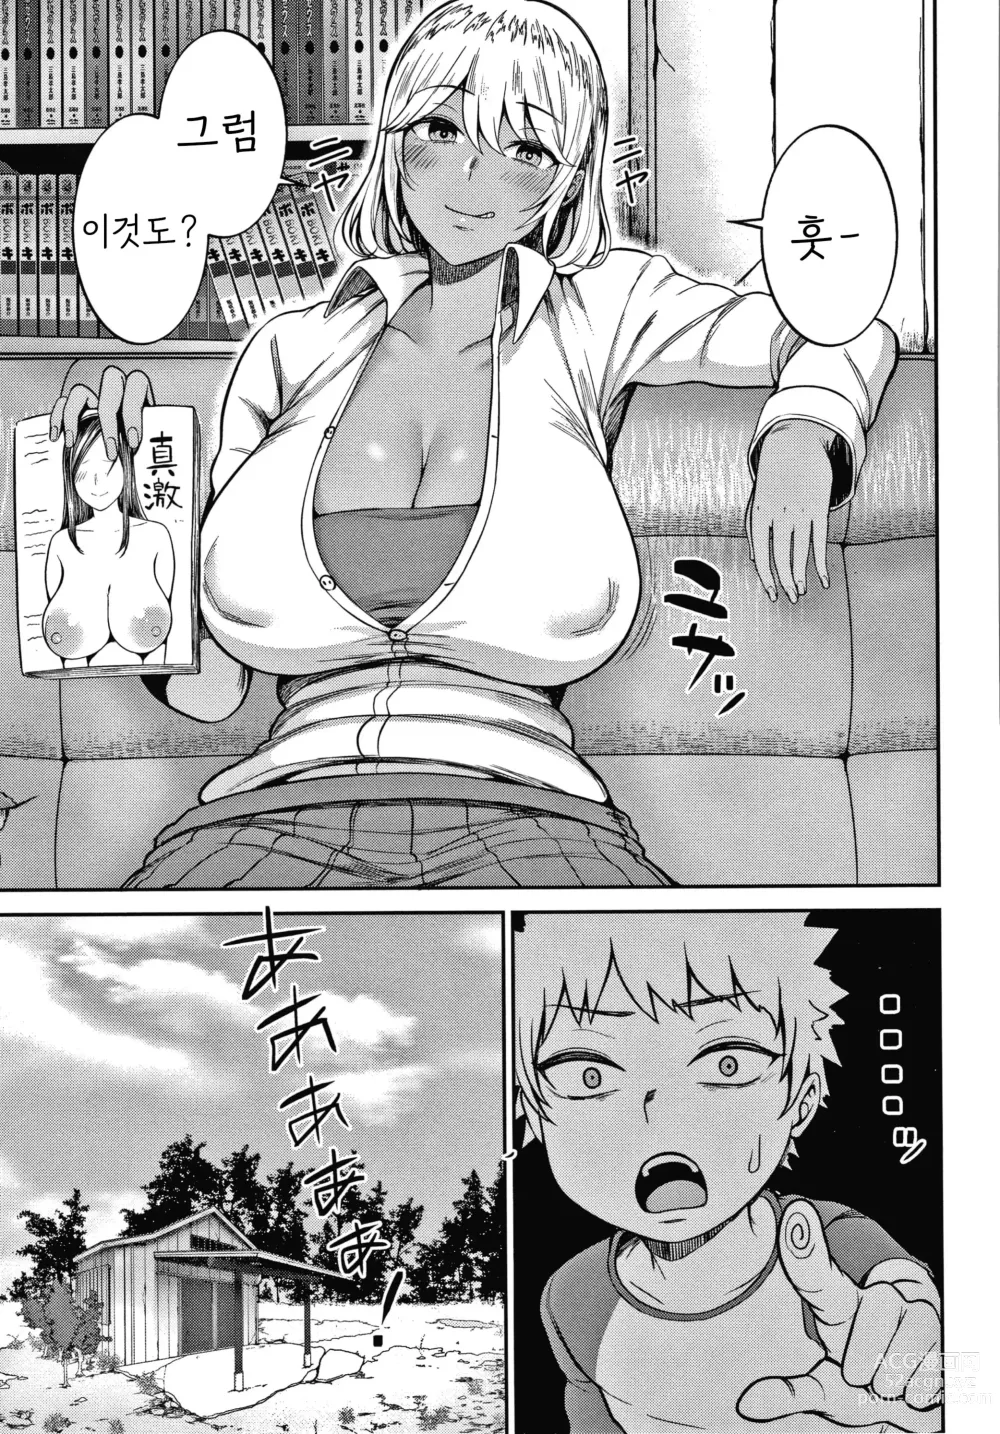 Page 3 of manga Himetsukichi Soudatsusen!